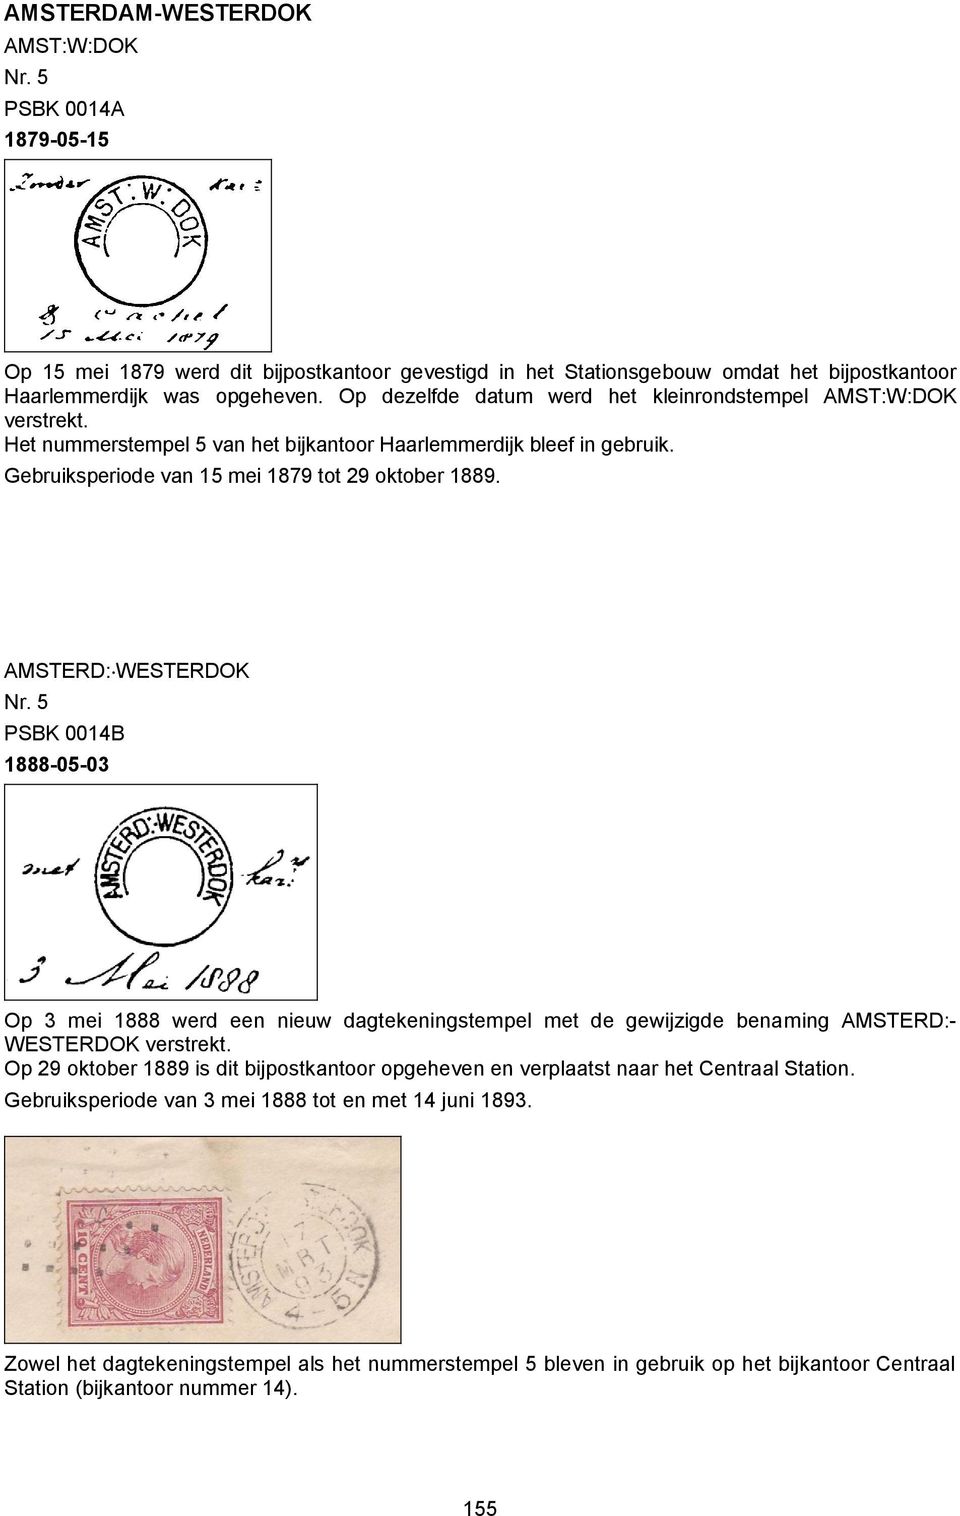 AMSTERD: WESTERDOK PSBK 0014B 1888-05-03 Op 3 mei 1888 werd een nieuw dagtekeningstempel met de gewijzigde benaming AMSTERD:- WESTERDOK verstrekt.